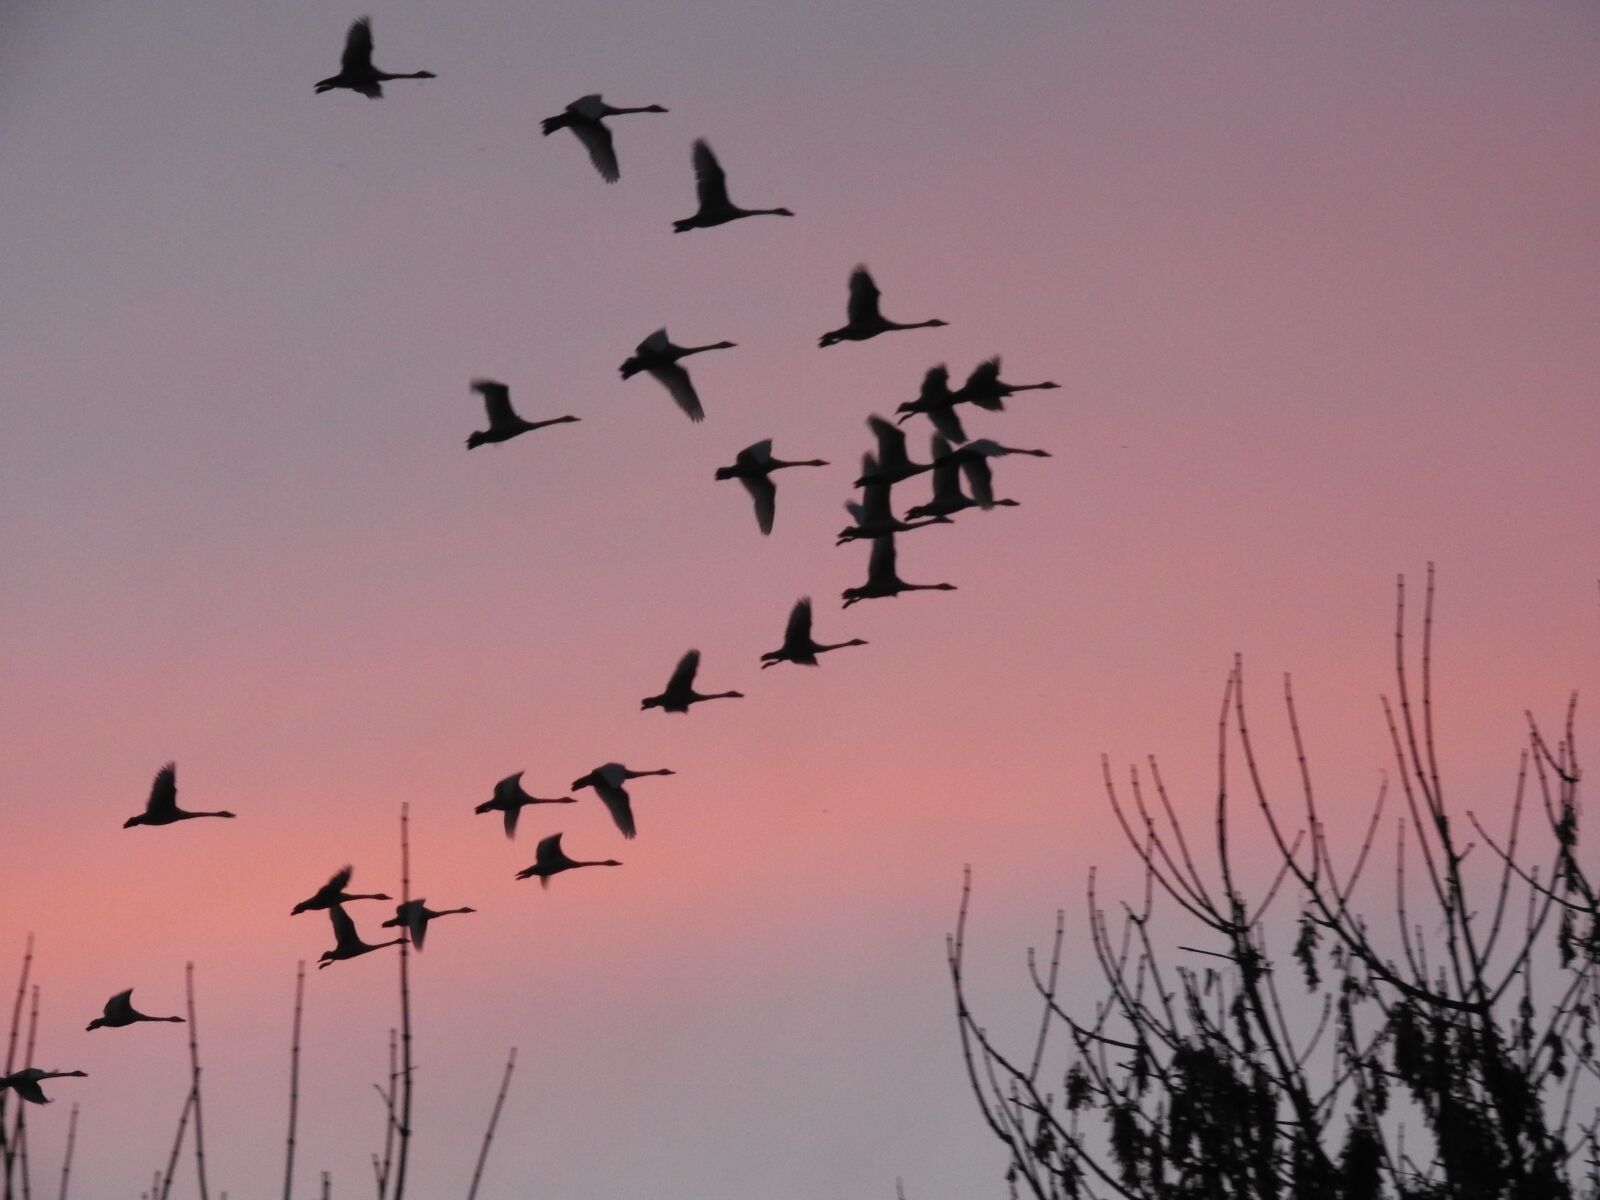 Nikon Coolpix P610 sample photo. Sunset, birds, sky photography